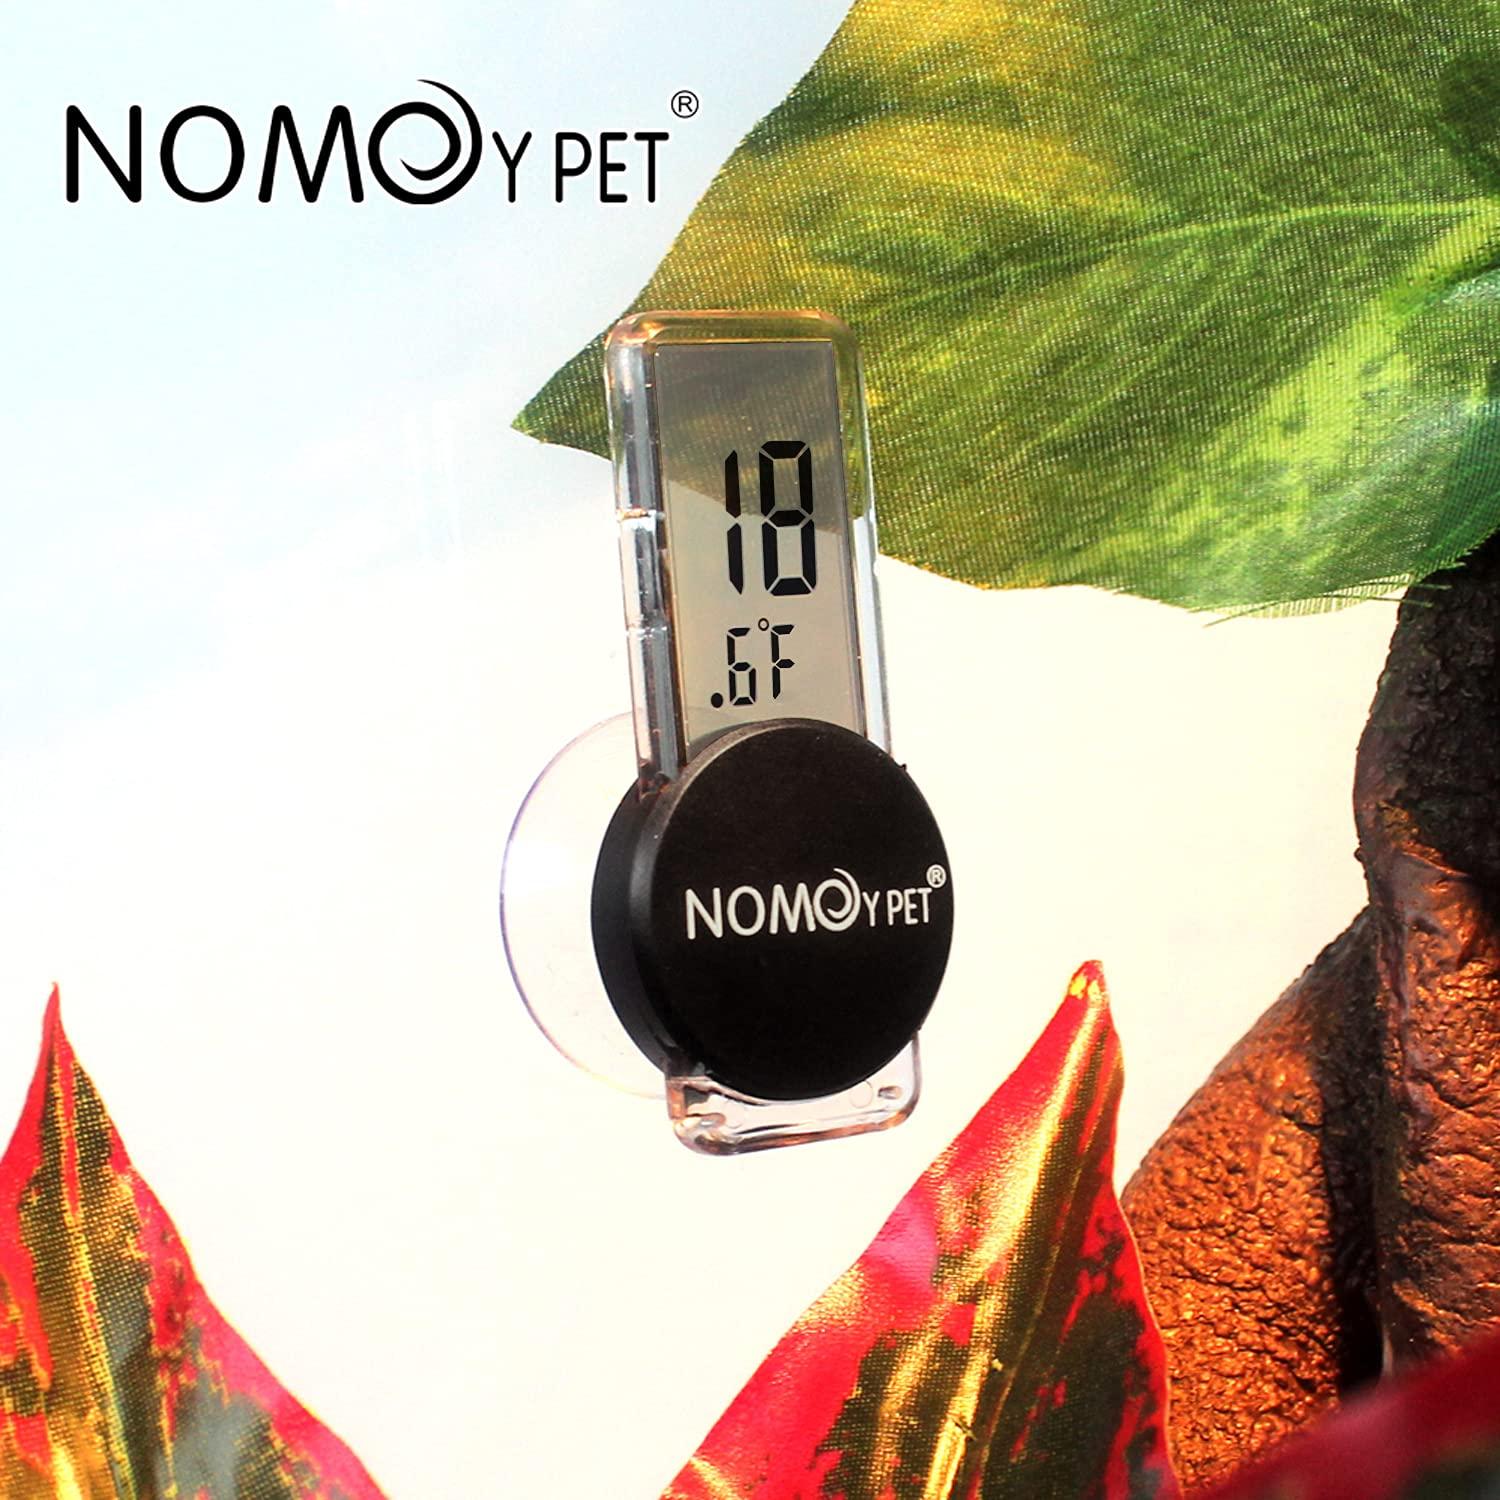 NOMO Reptile Terrarium Thermometer Hygrometer Indoor Outdoor Dual Gauges  Greenhouse Pet Rearing Box Terrarium Tortue Terrestre